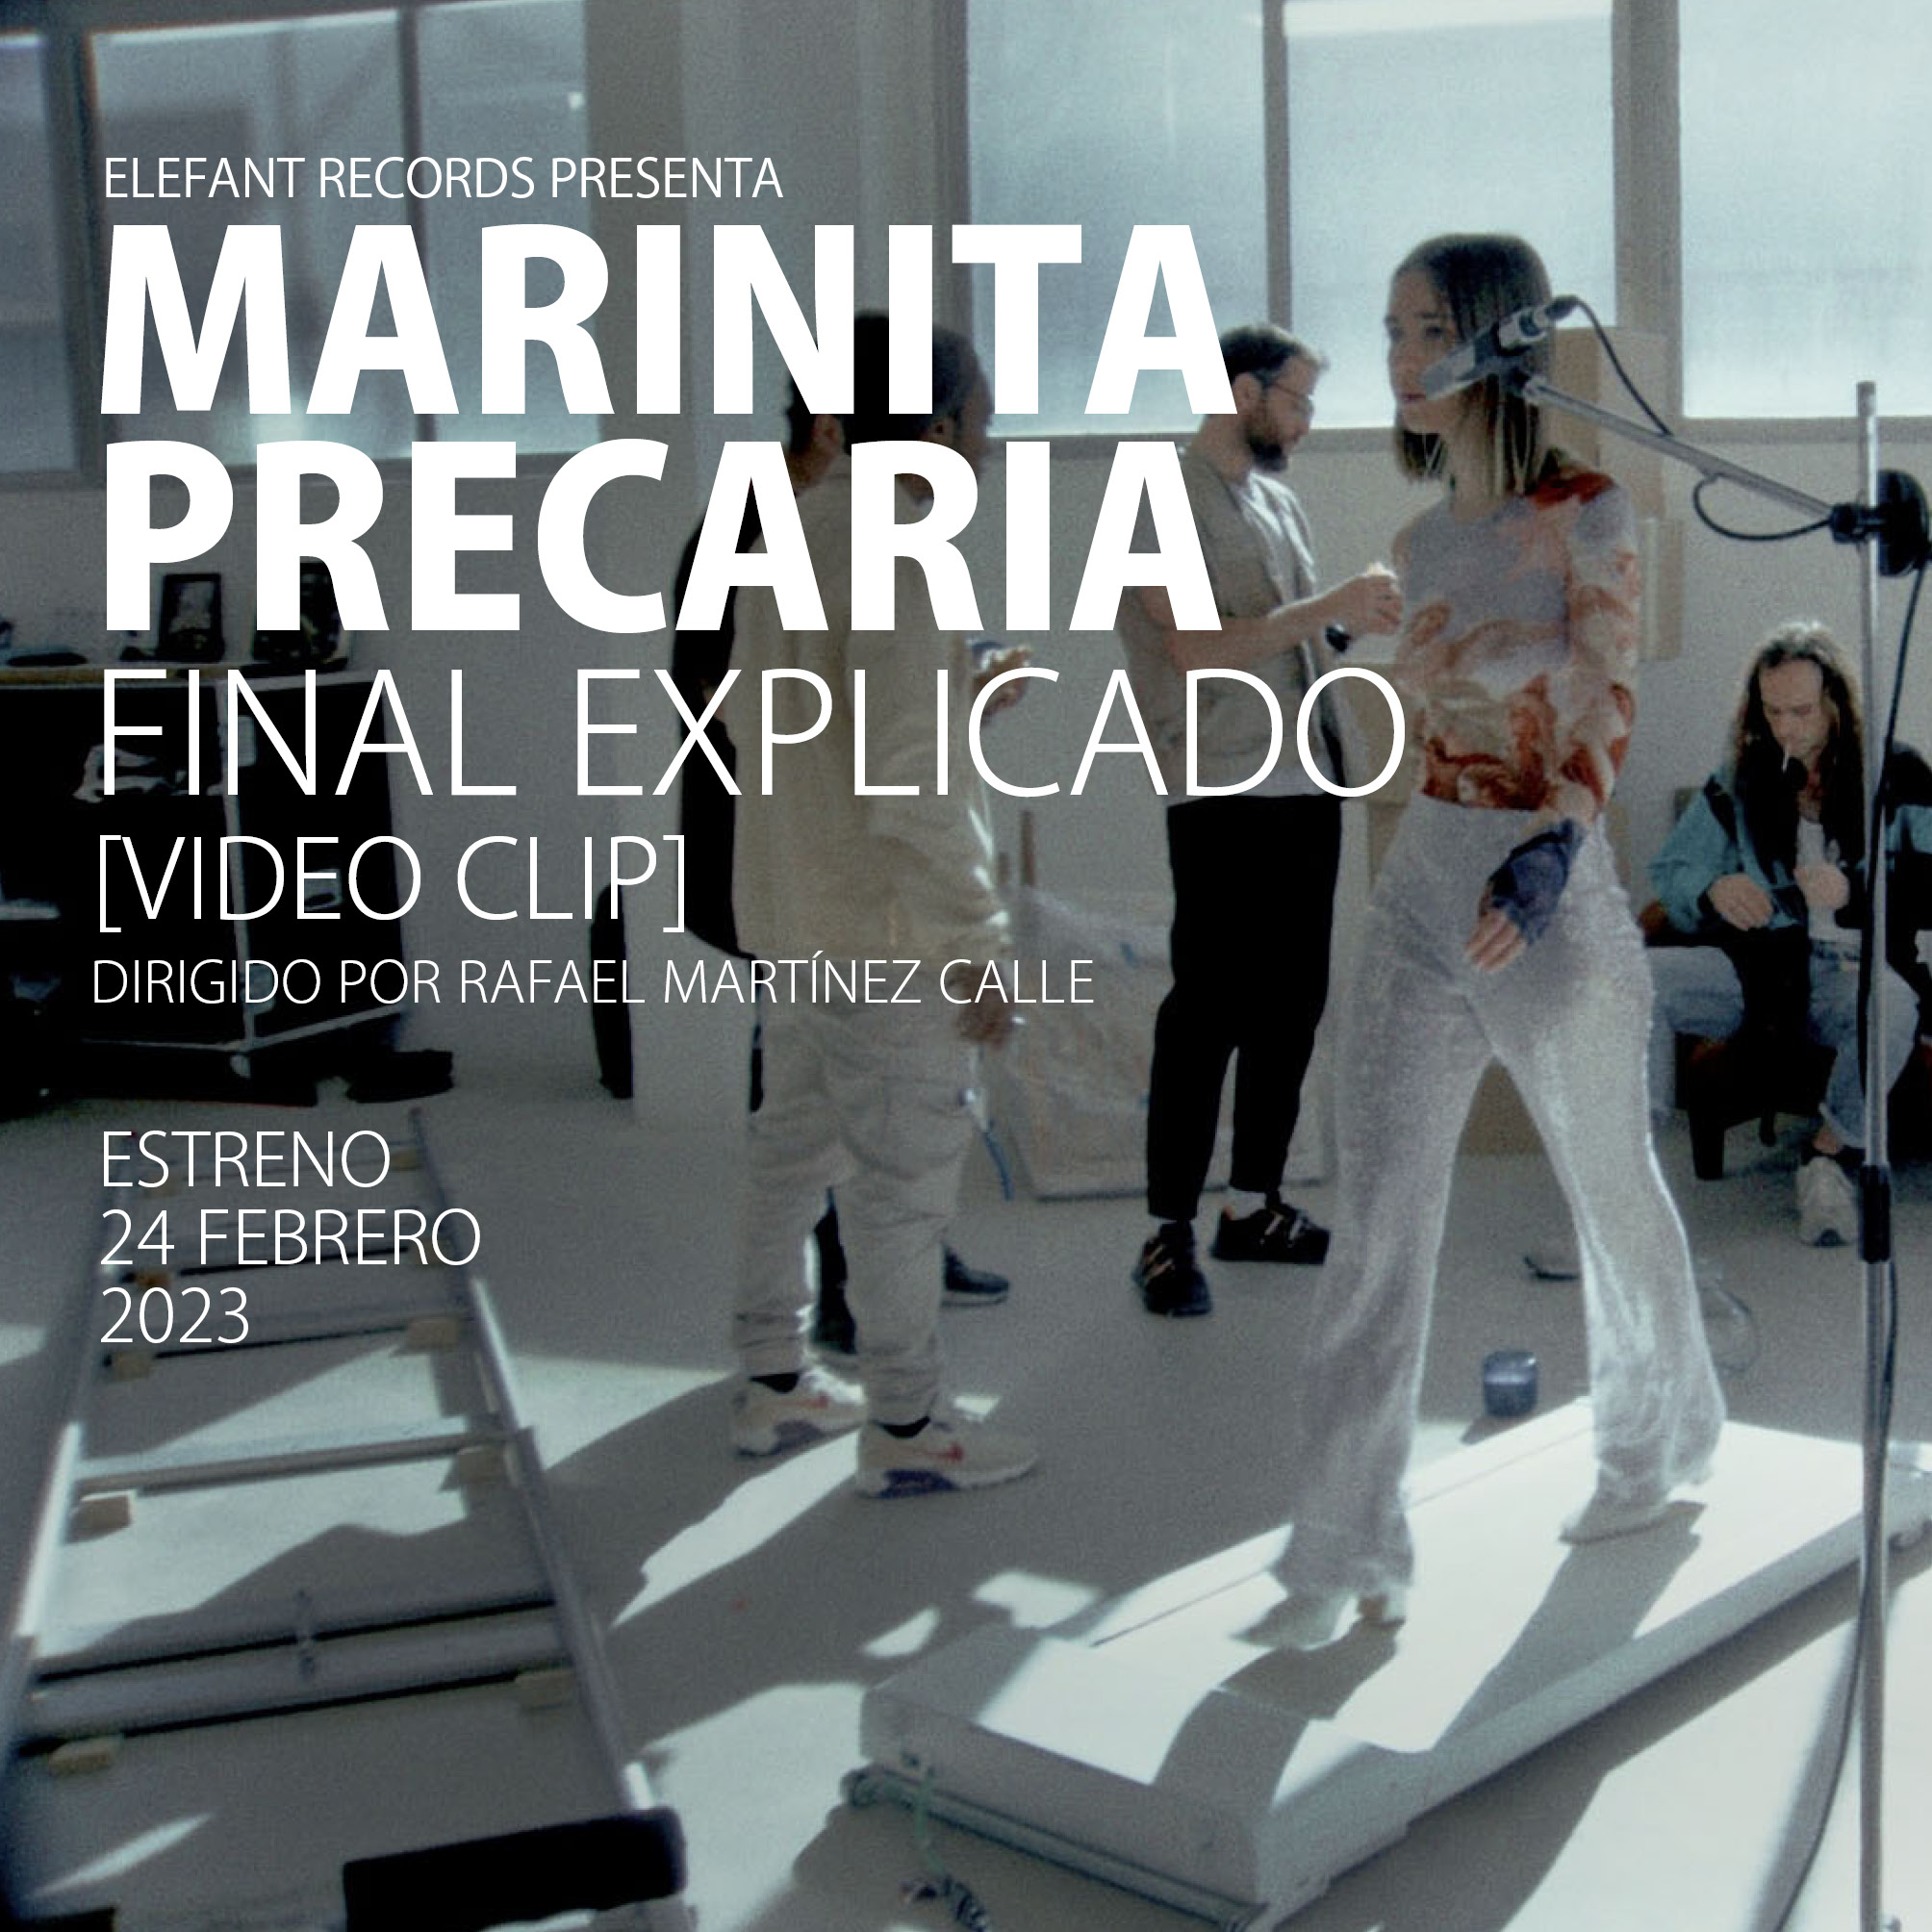 MARINITA PRECARIA "Final Explicado" Single Digital